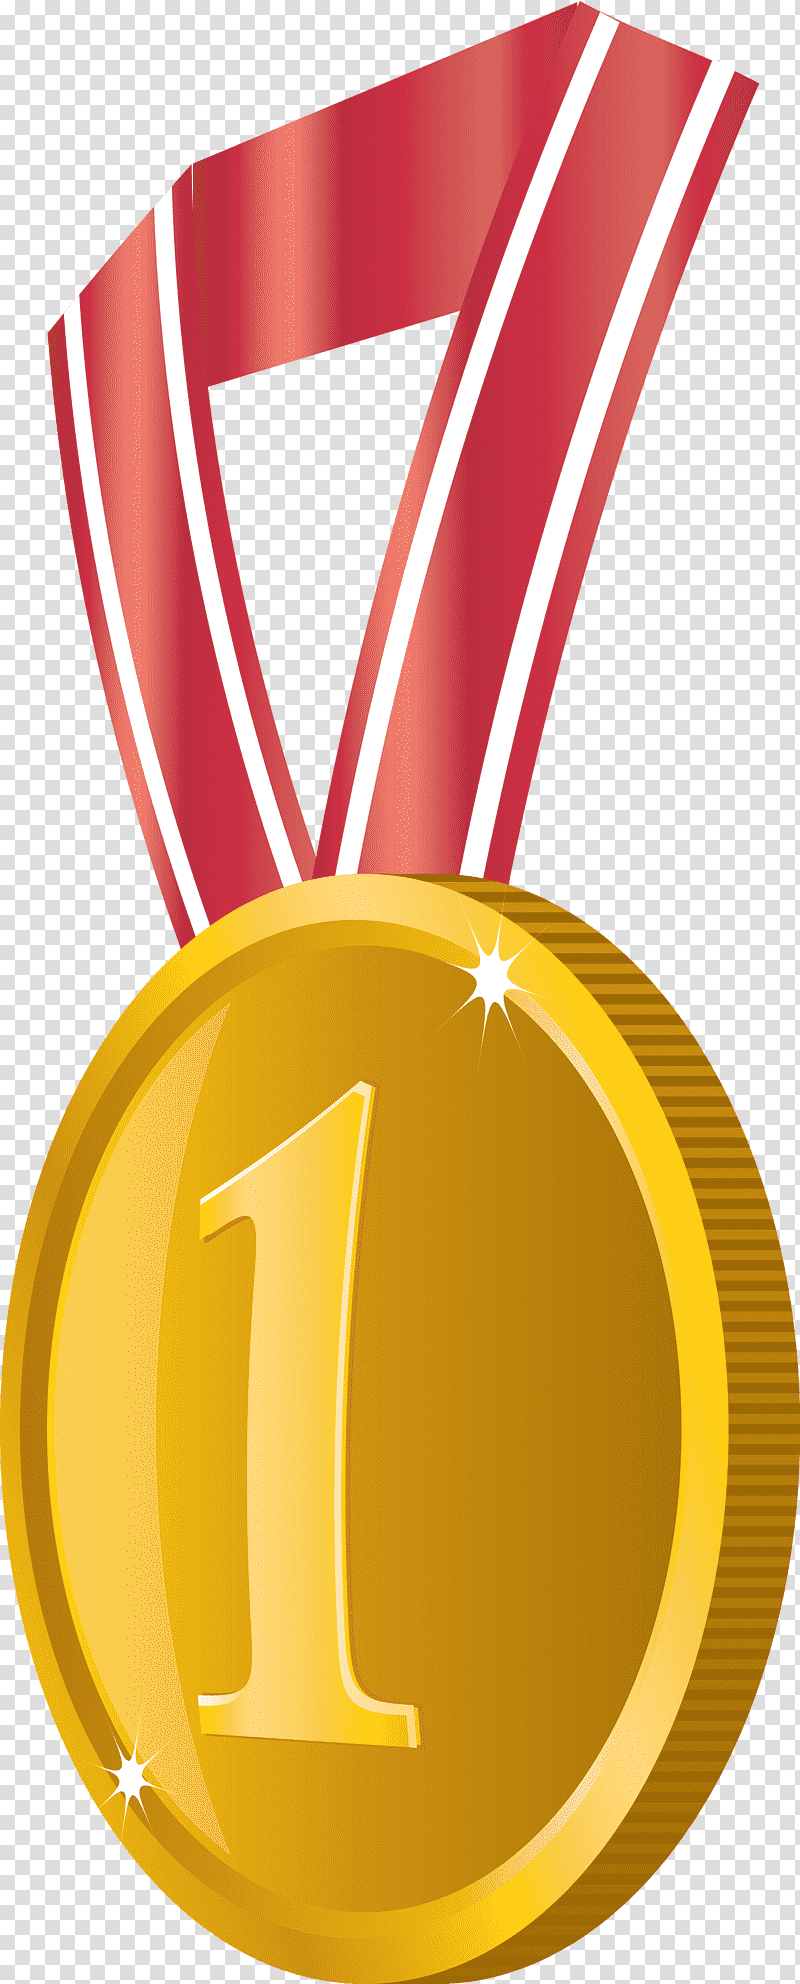 Gold Badge No 1 Badge Award Gold Badge, Medal, Gold Medal, Logo, Silver transparent background PNG clipart